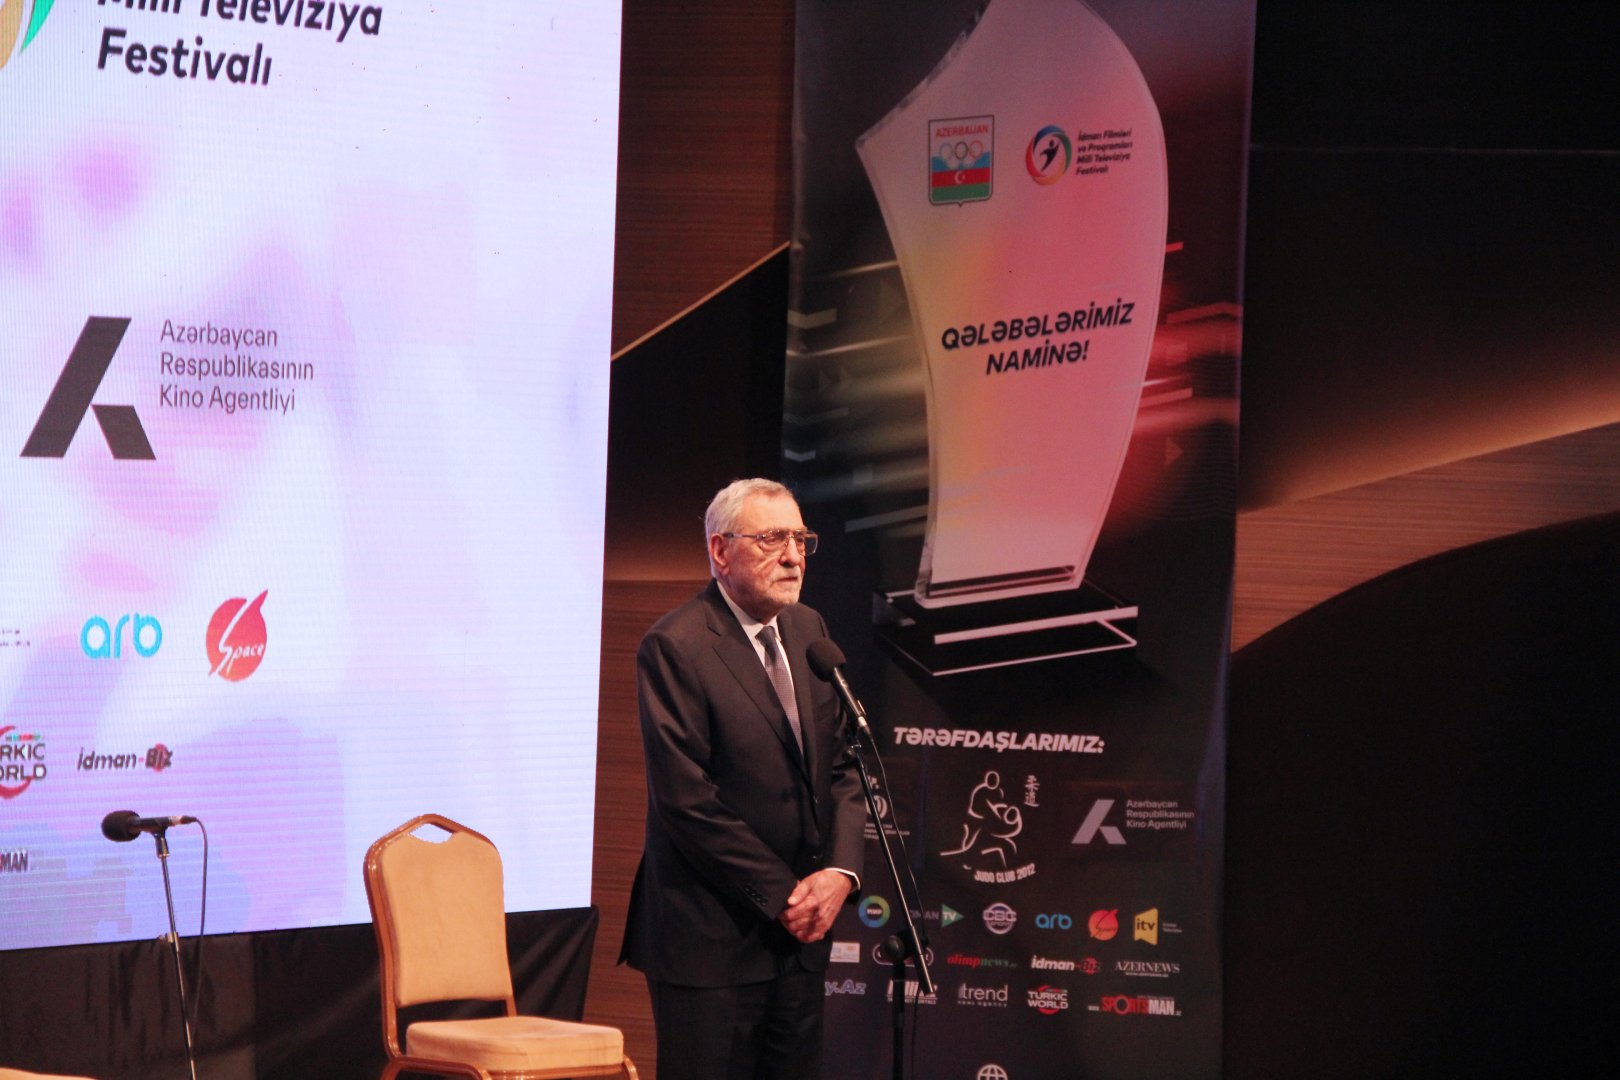 В Баку состоялась церемония награждения II Национального телефестиваля спортивных фильмов и программ (ФОТО)